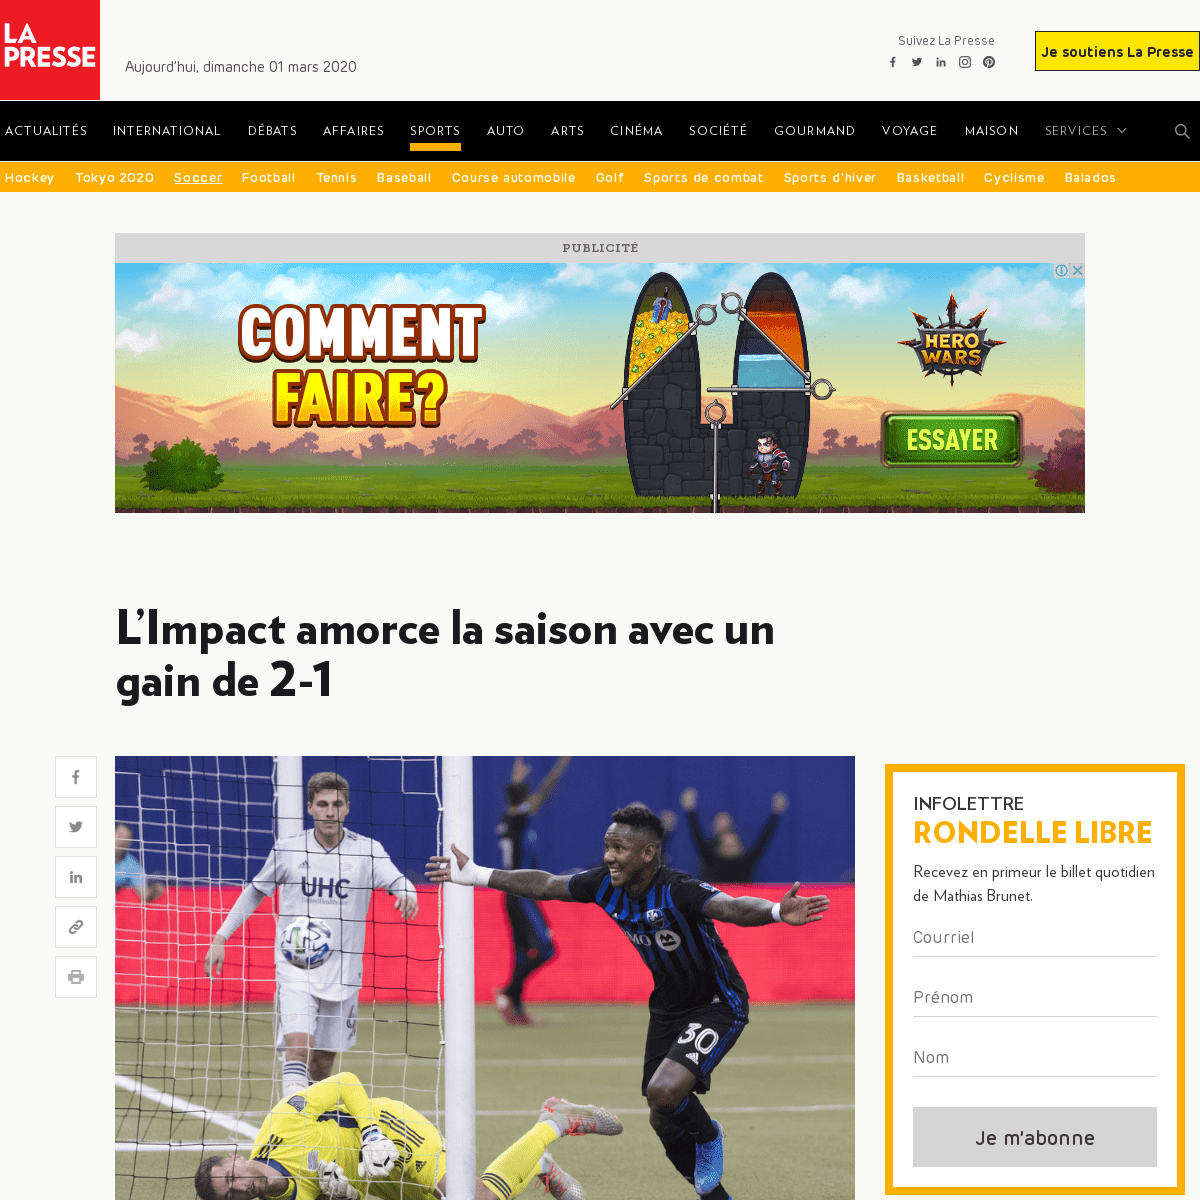 A complete backup of www.lapresse.ca/sports/soccer/202002/29/01-5262884-limpact-amorce-la-saison-avec-un-gain-de-2-1.php